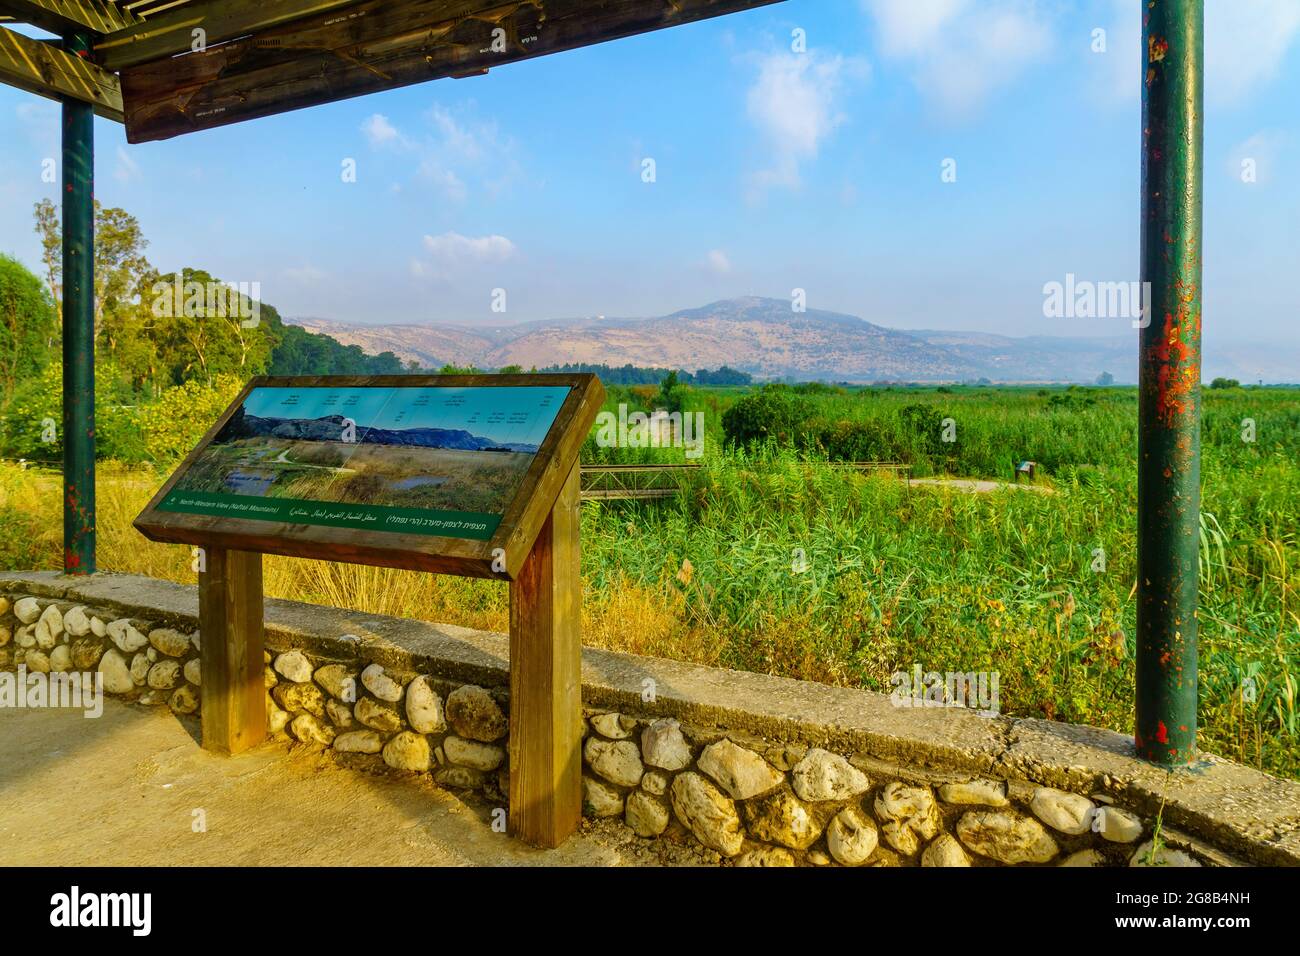 Hula, Israele - 16 luglio 2021: Vista di un punto di osservazione con i segni di spiegazione, nella Riserva Naturale di Hula, Israele del Nord Foto Stock